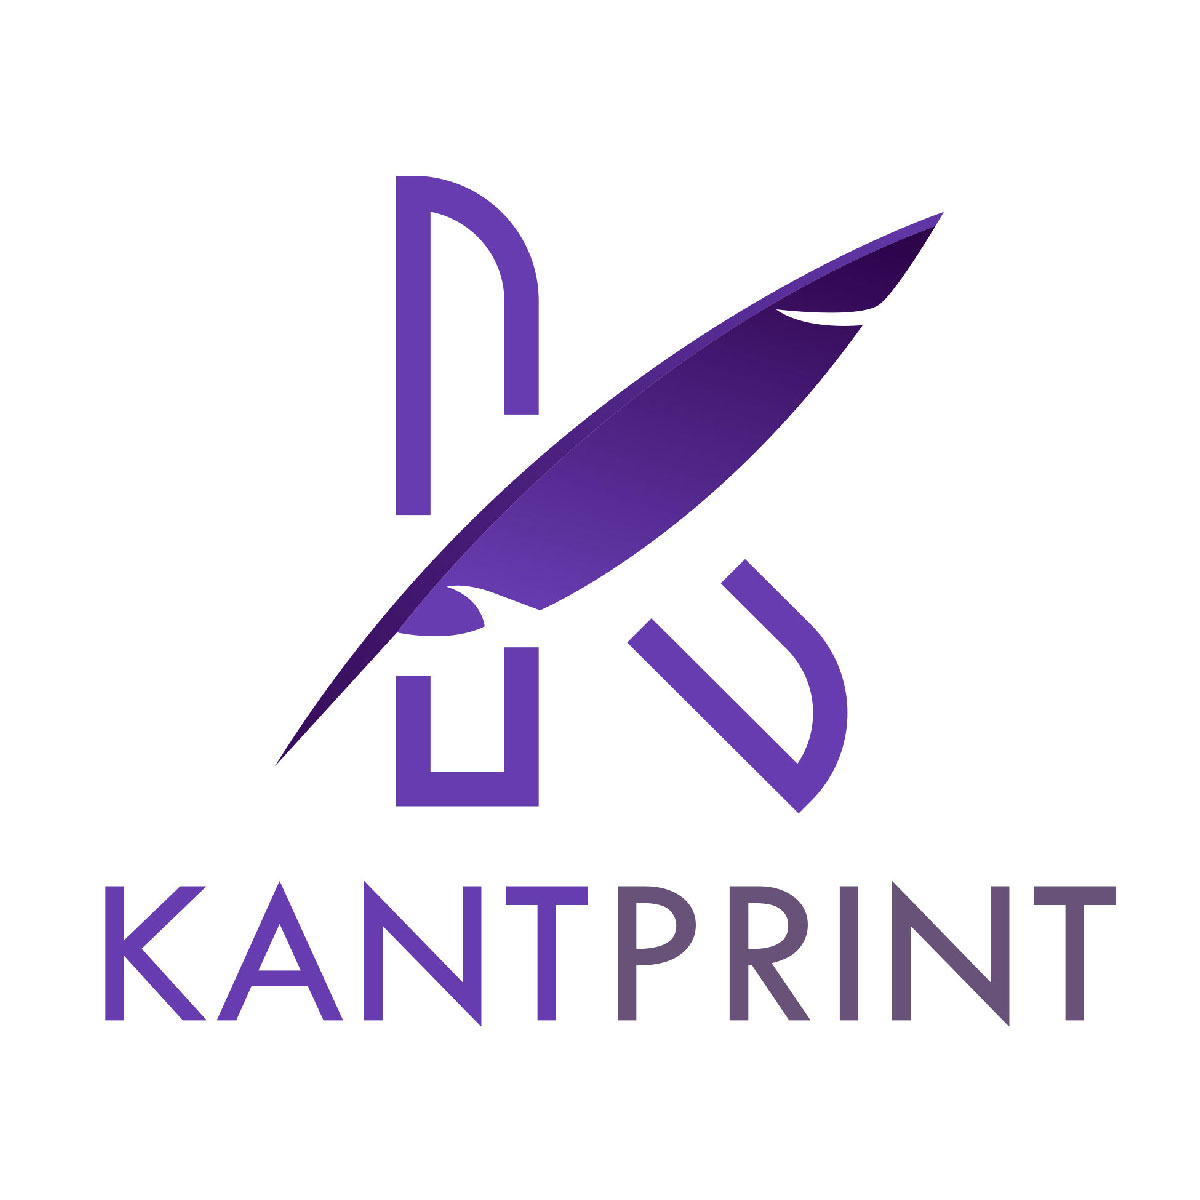 (c) Kantprint.com